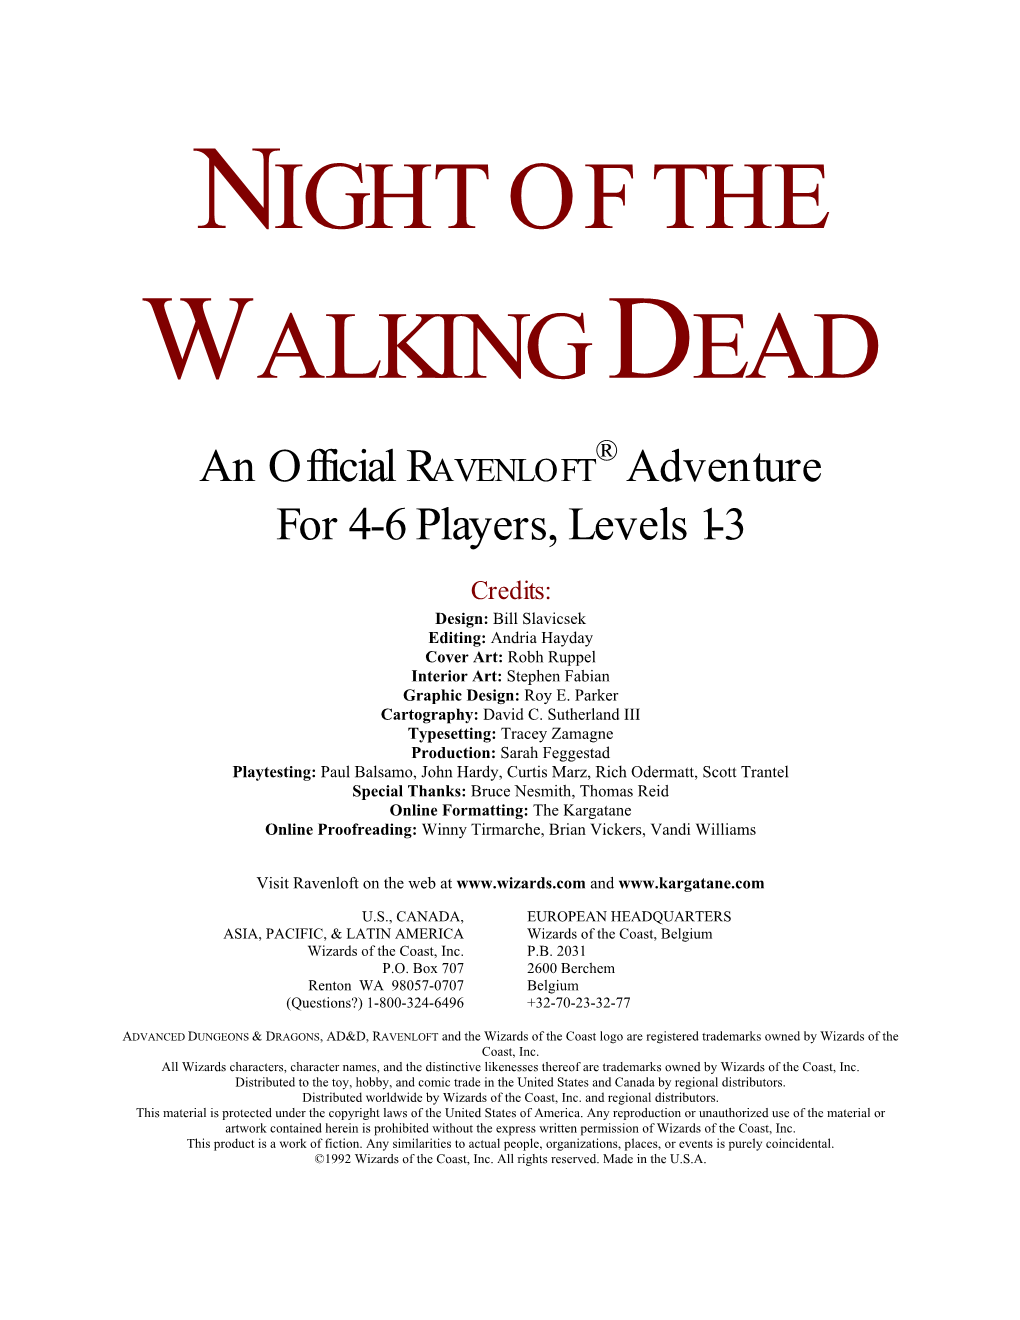 Night of the Walking Dead